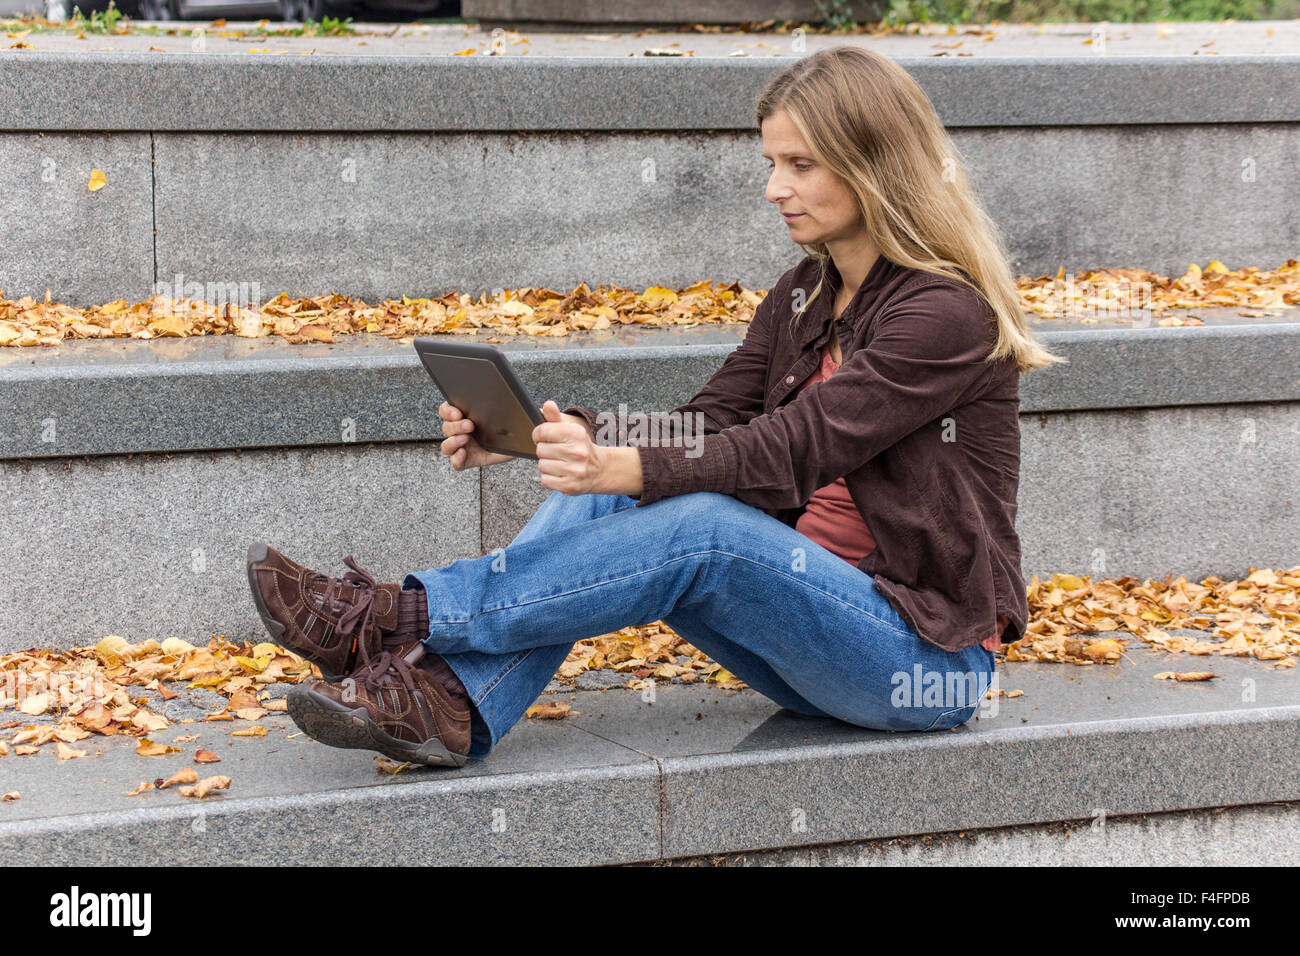 Une femme assise avec un tablet PC un escalier en pierre grise avec des feuilles d'automne jaune Banque D'Images